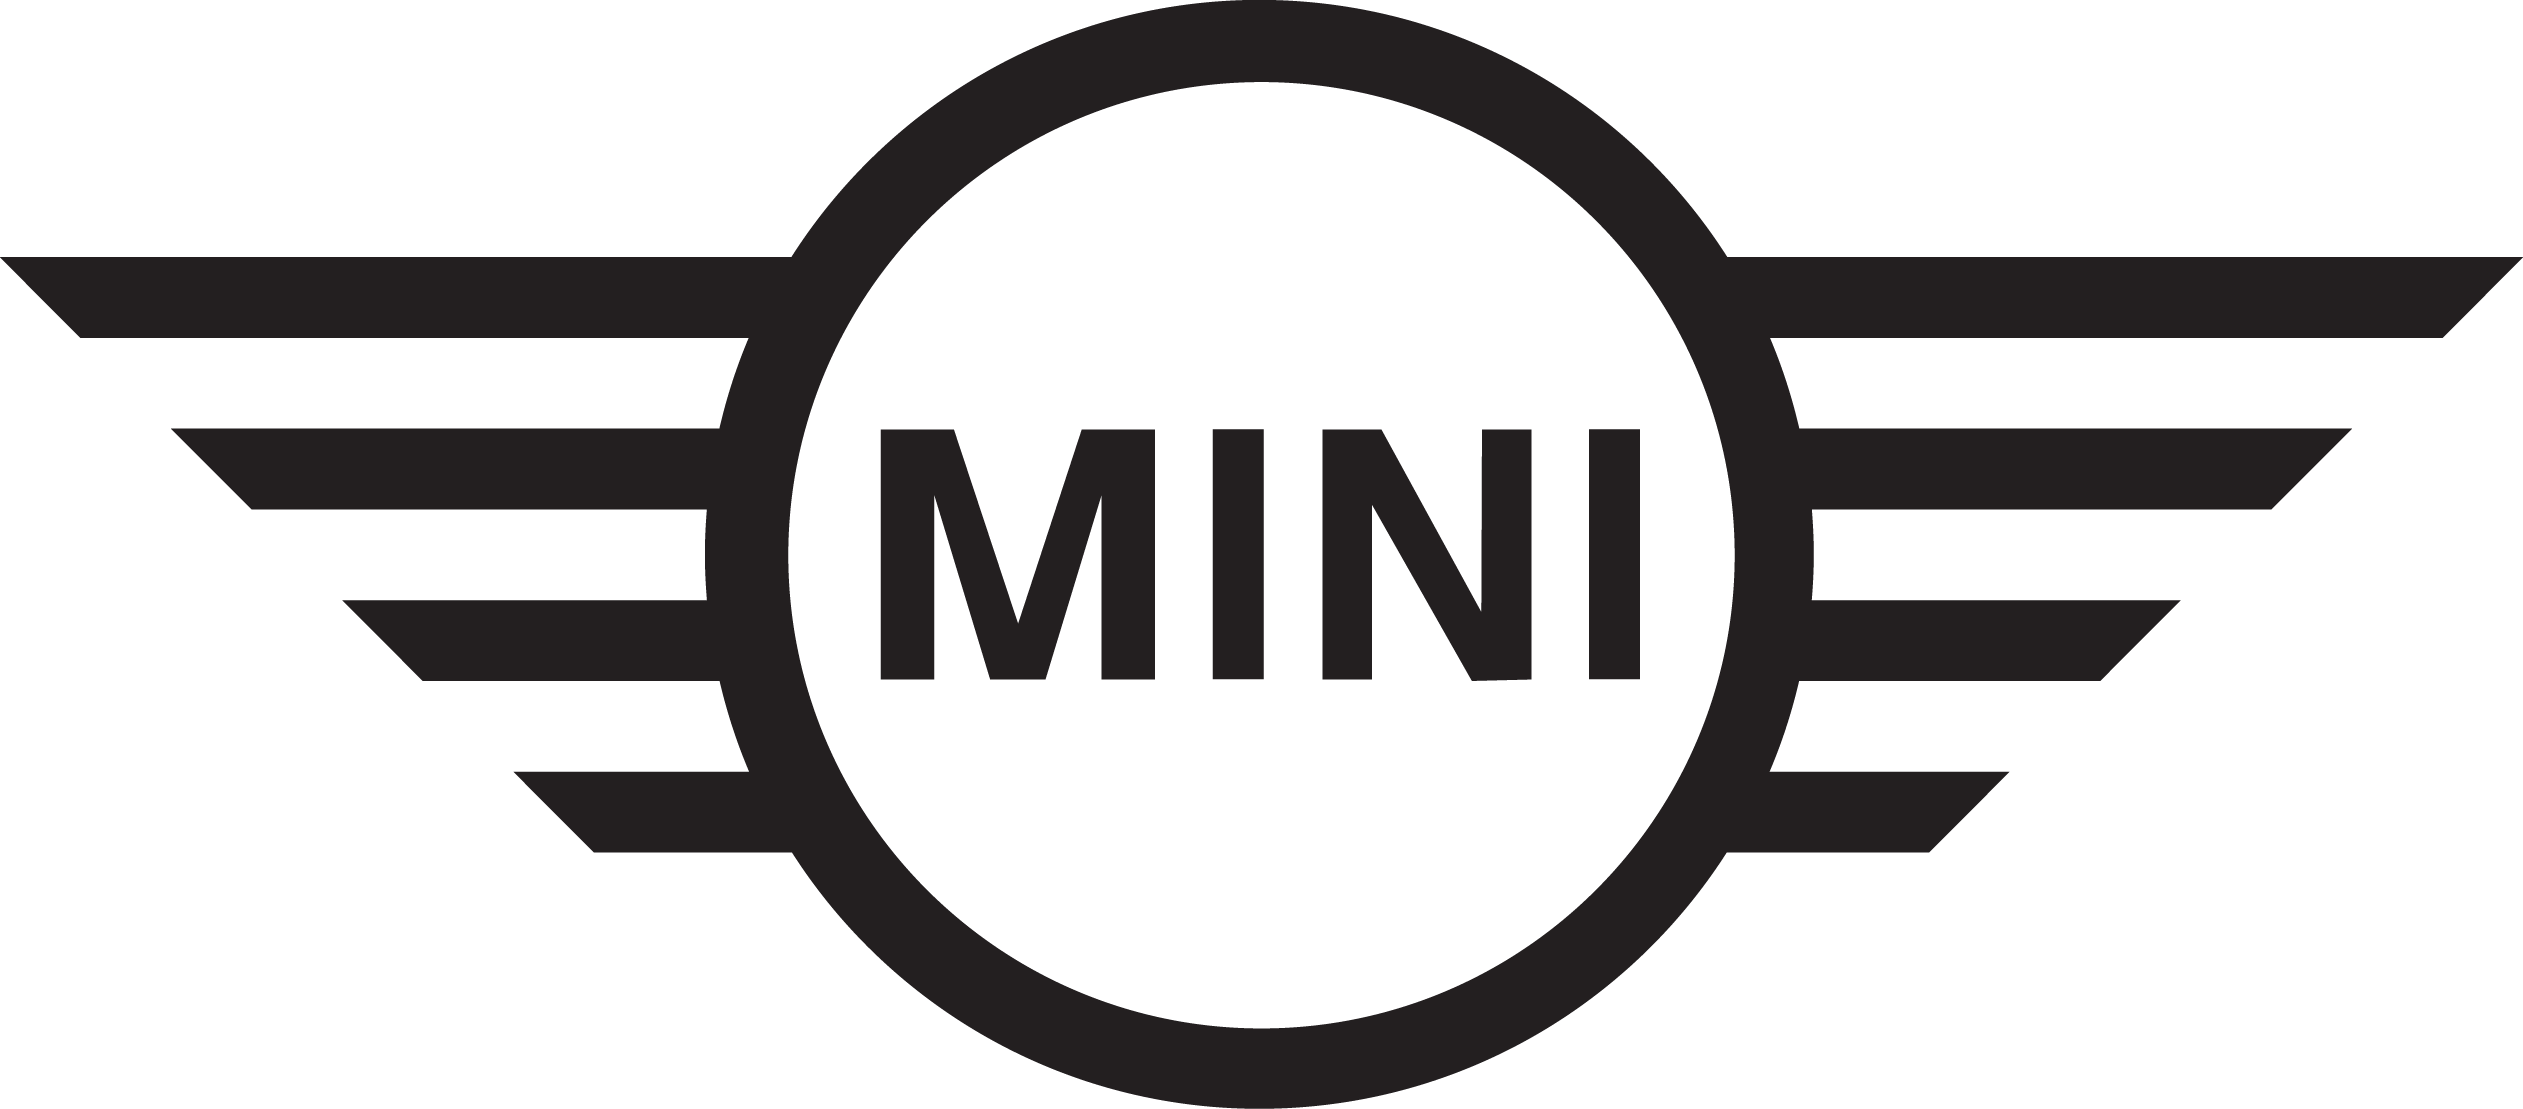 Мини Купер Логотип Прозрачное изображение